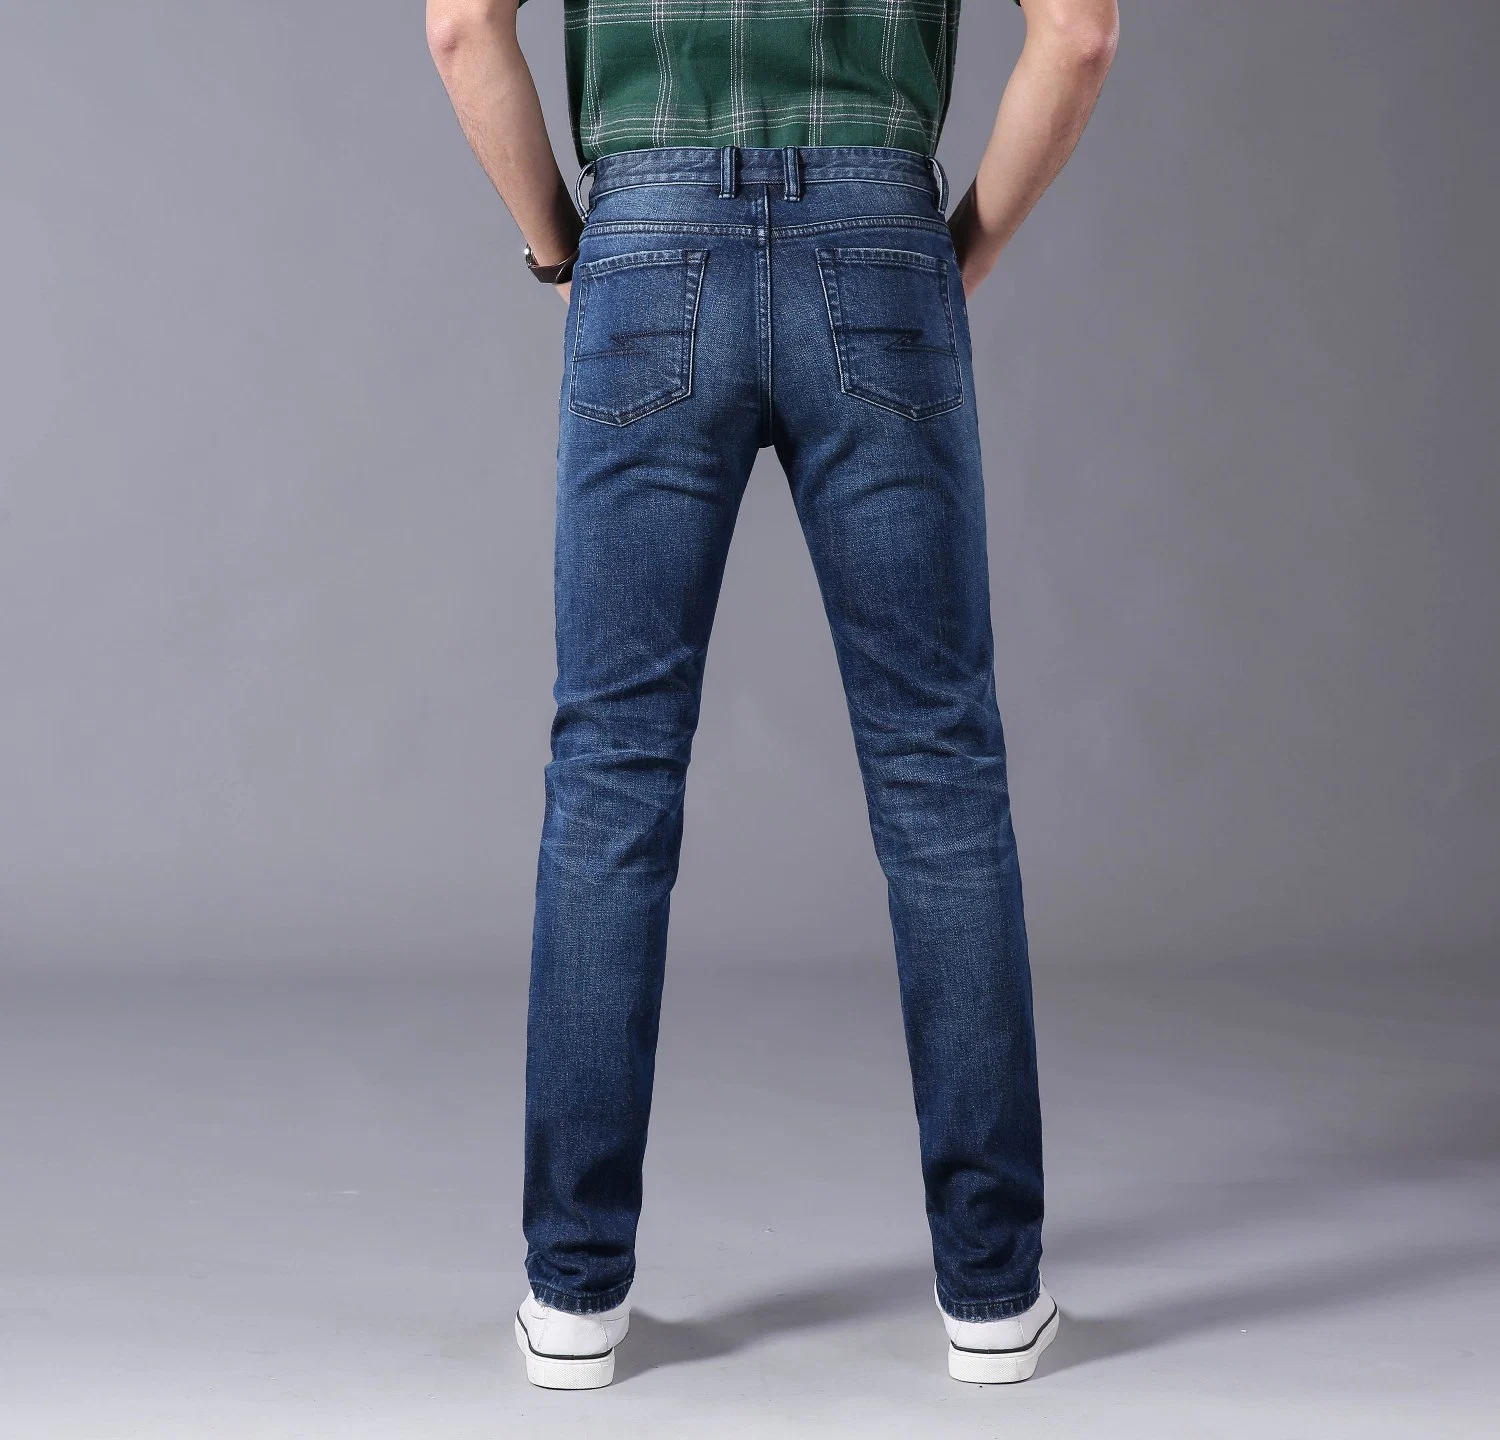 موضة بيع ساخنة مقطن سباندكس جينز مخصص لرجال الأعمال